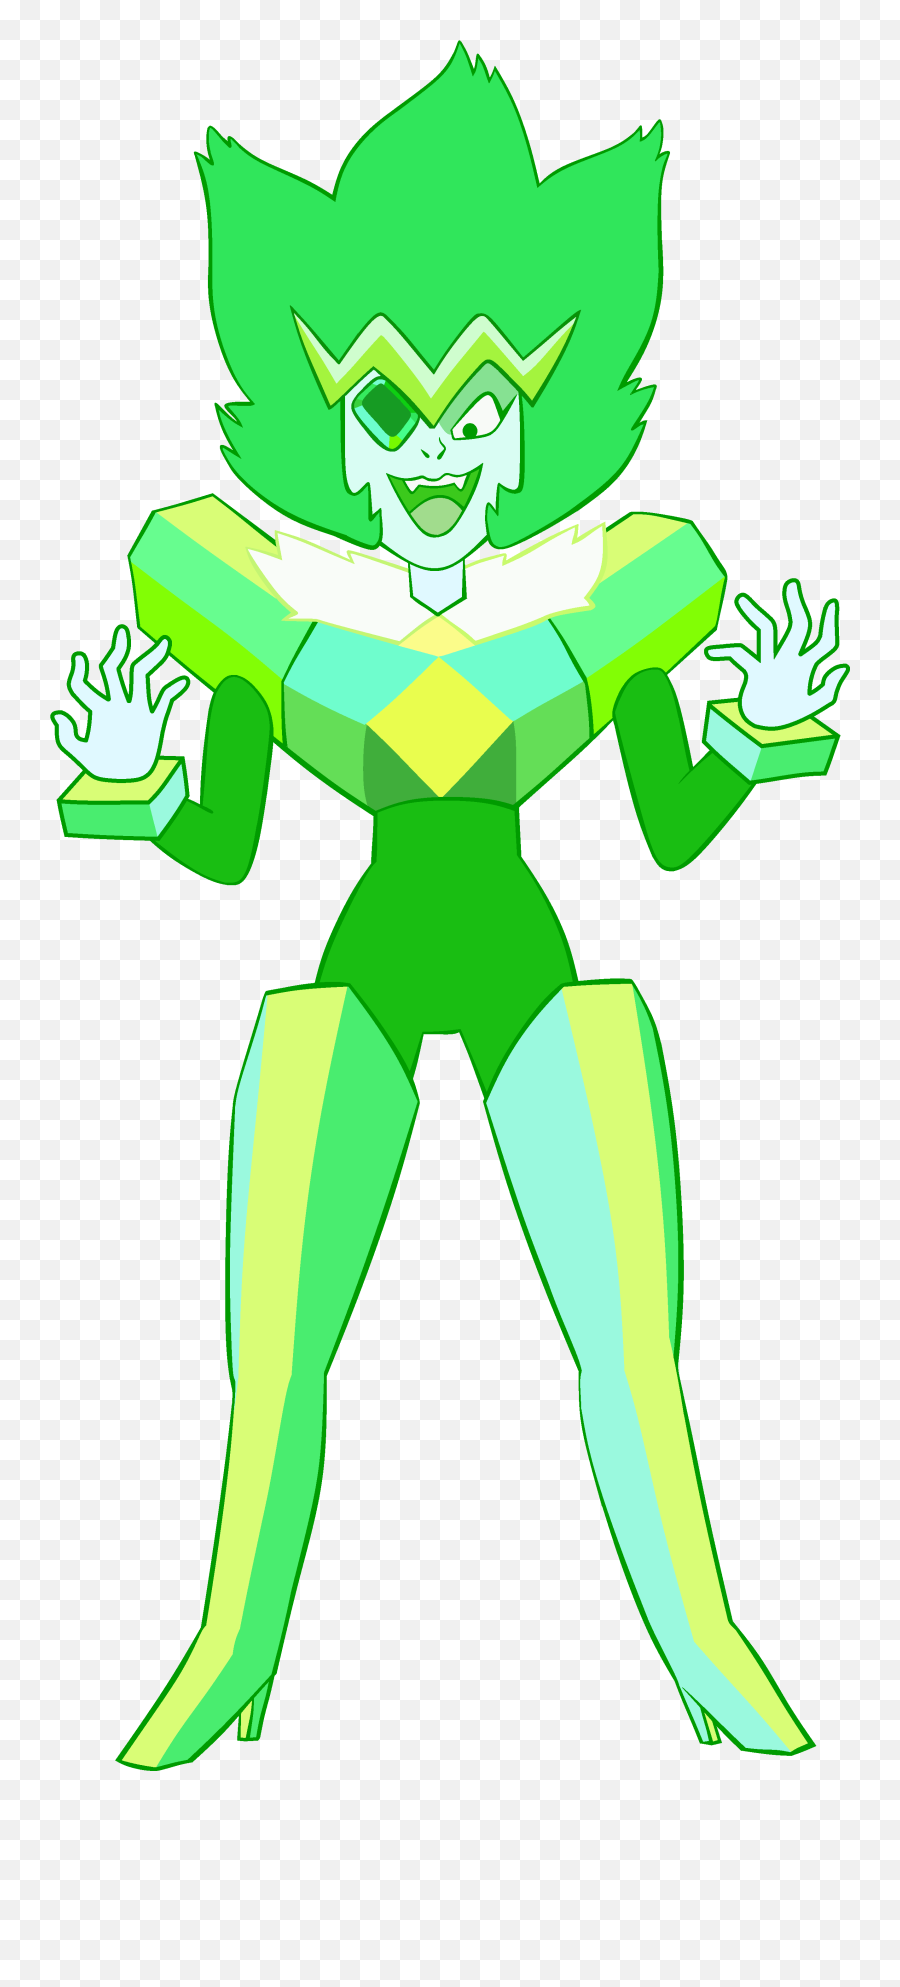 Emerald - Emerald Steven Universe Png,Emerald Png